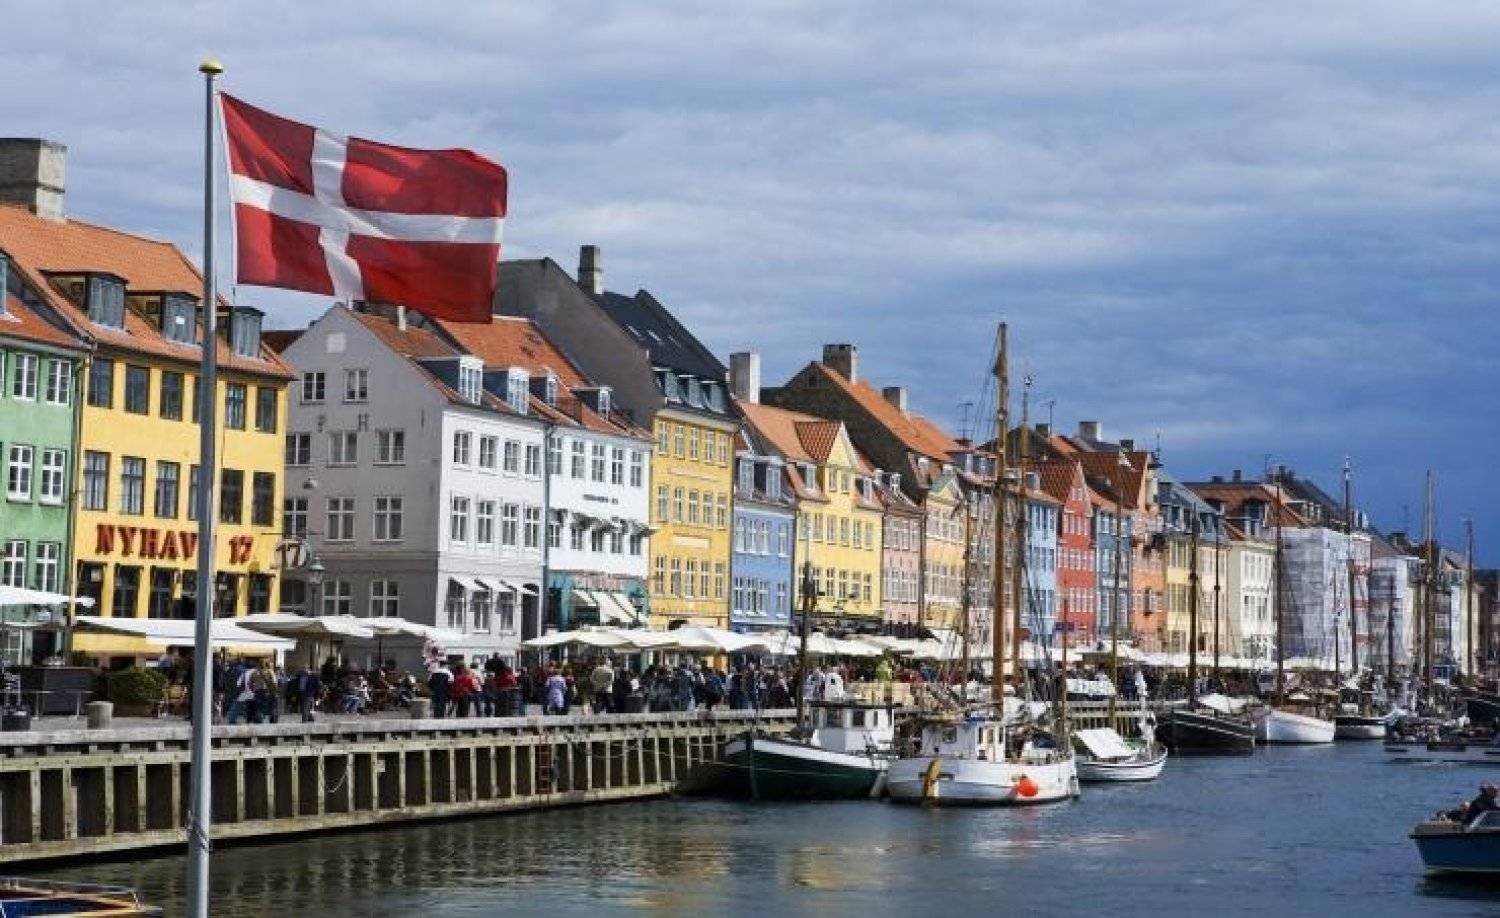  كوبنهاغن تمنح مكافآت للسياح الذين يحافظون على البيئة